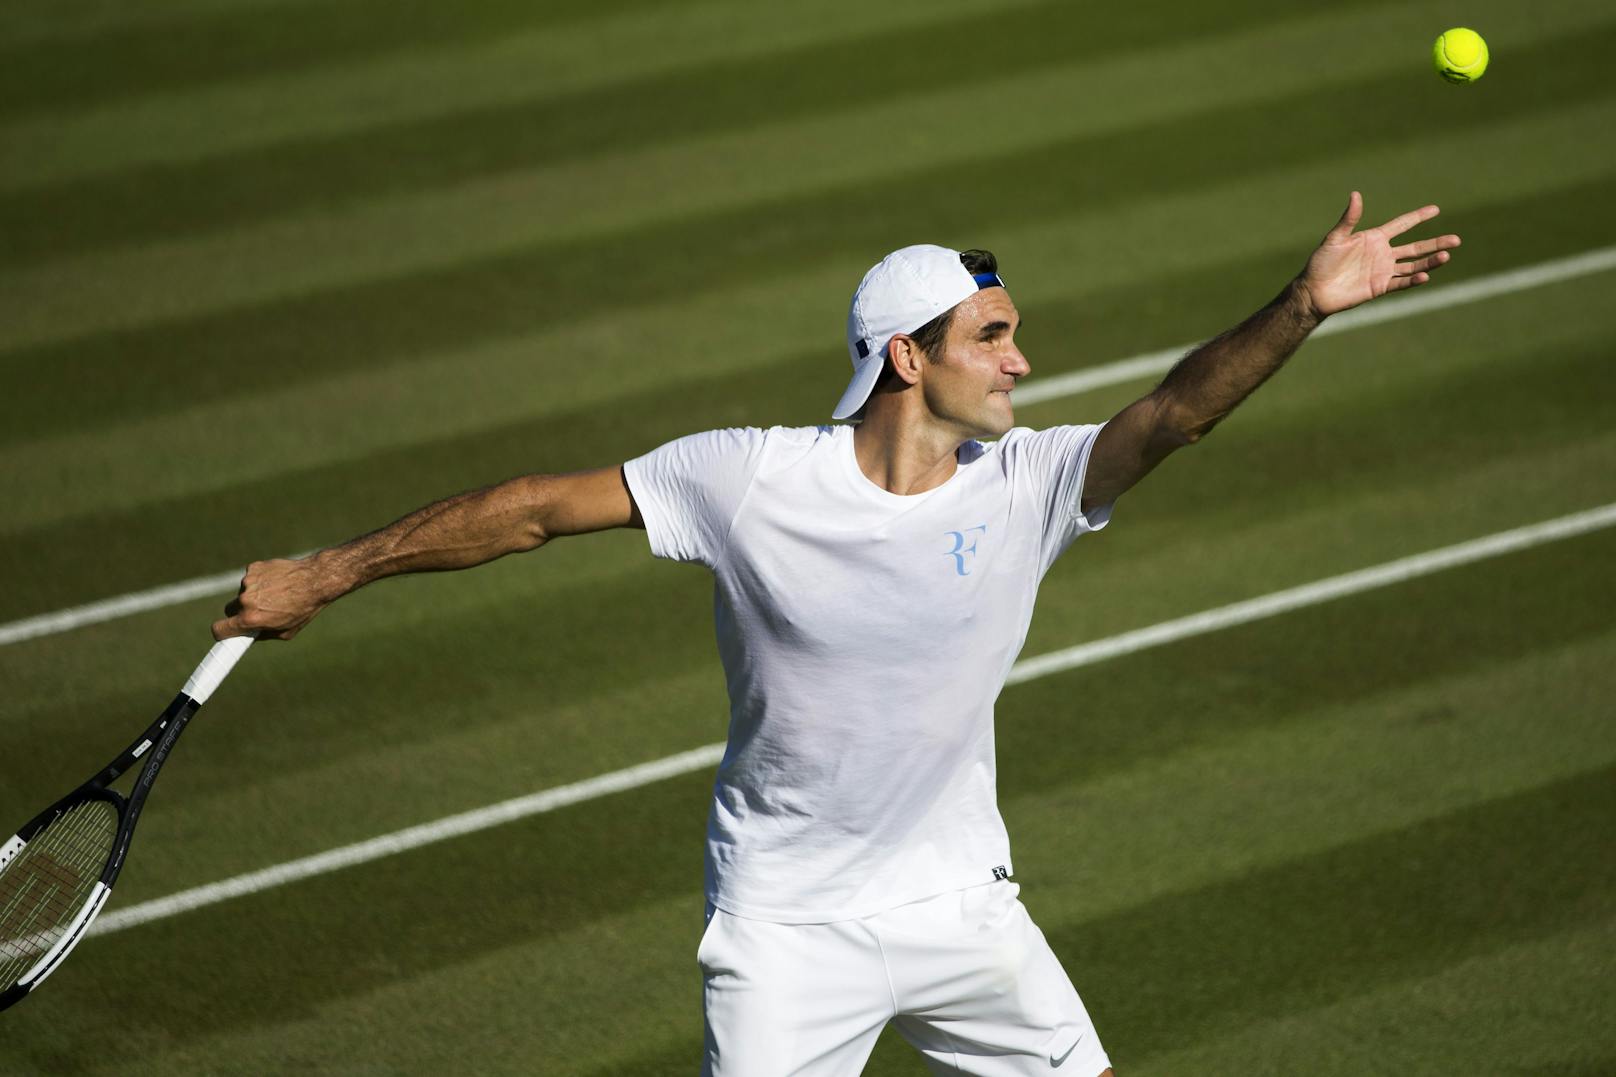 103 Titel, mehr als 130 Millionen Euro Preisgeld, fünf Mal zum Jahres-Abschluss die Nummer 1 im ATP-Ranking - Federers Zahlen sprechen für sich. Bei seiner Rücktritts-Ankündigung ist er 41 Jahre alt, hat eine ATP-Bilanz von 1251 Siegen zu 275 Niederlagen.